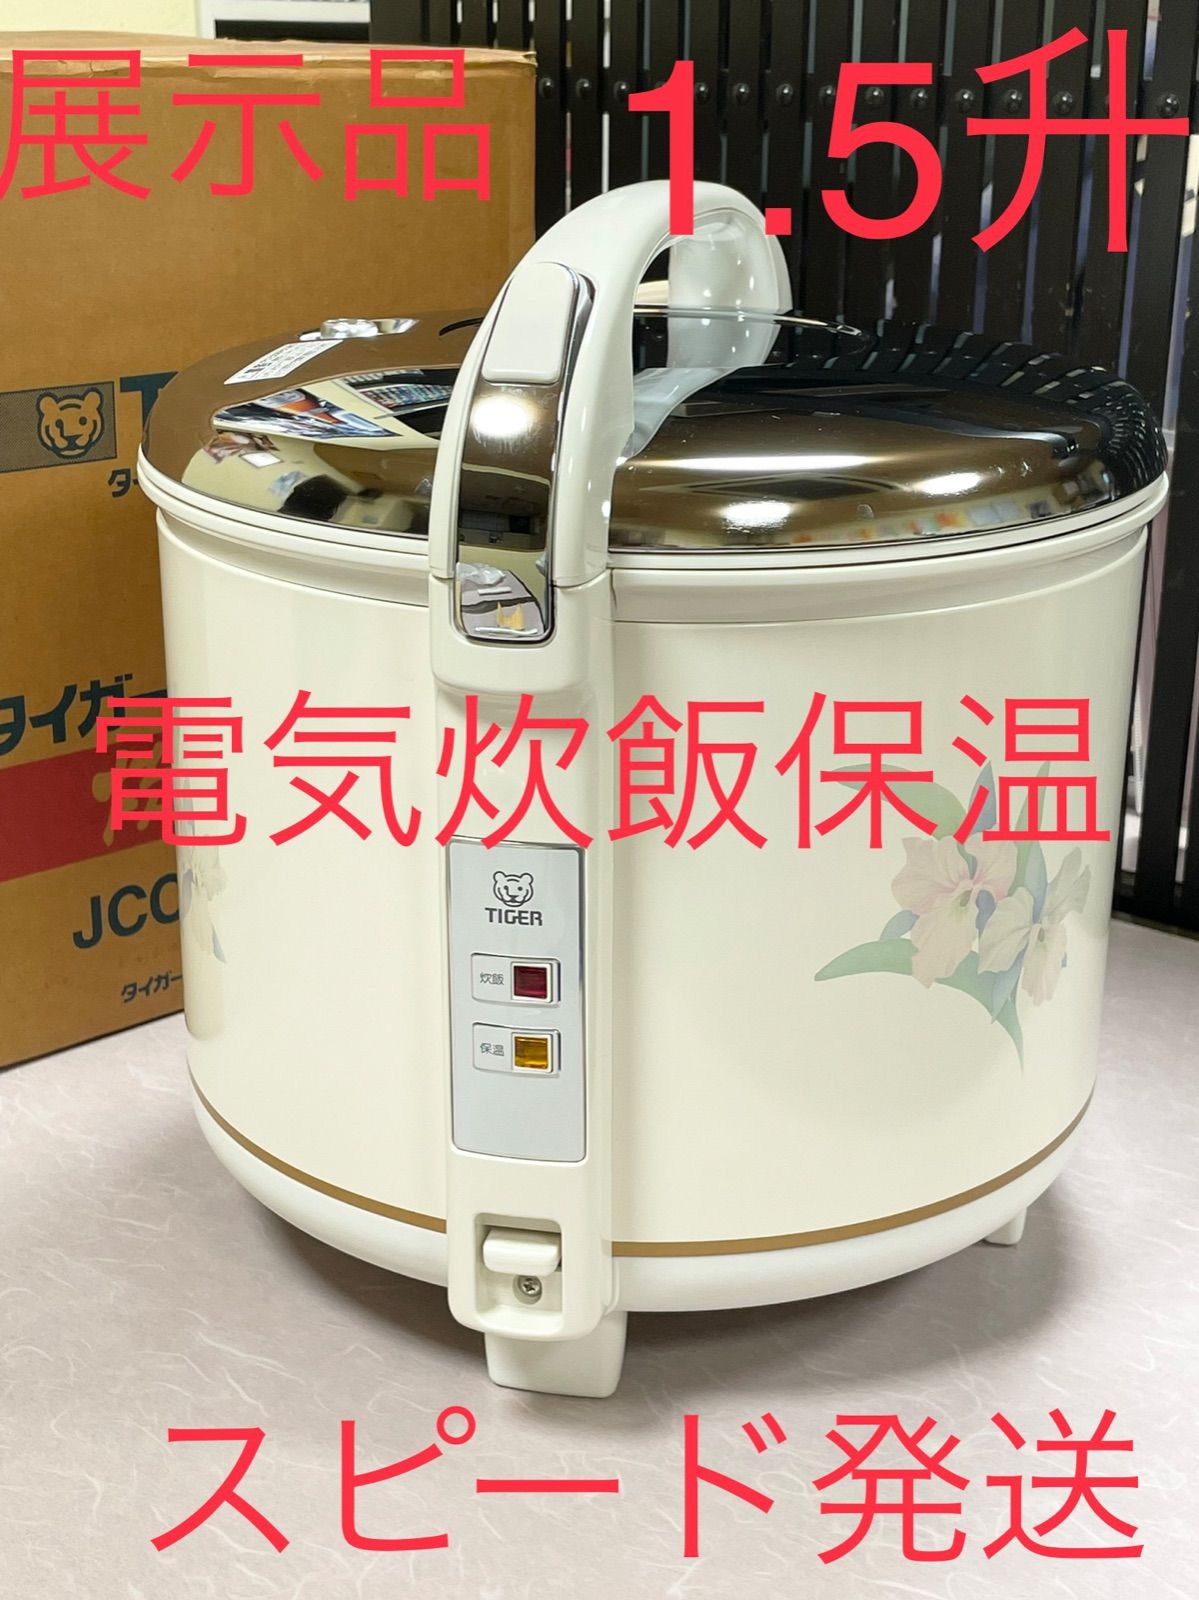 経典ブランド 1.5升タイガー炊飯ジャー炊飯器業務用